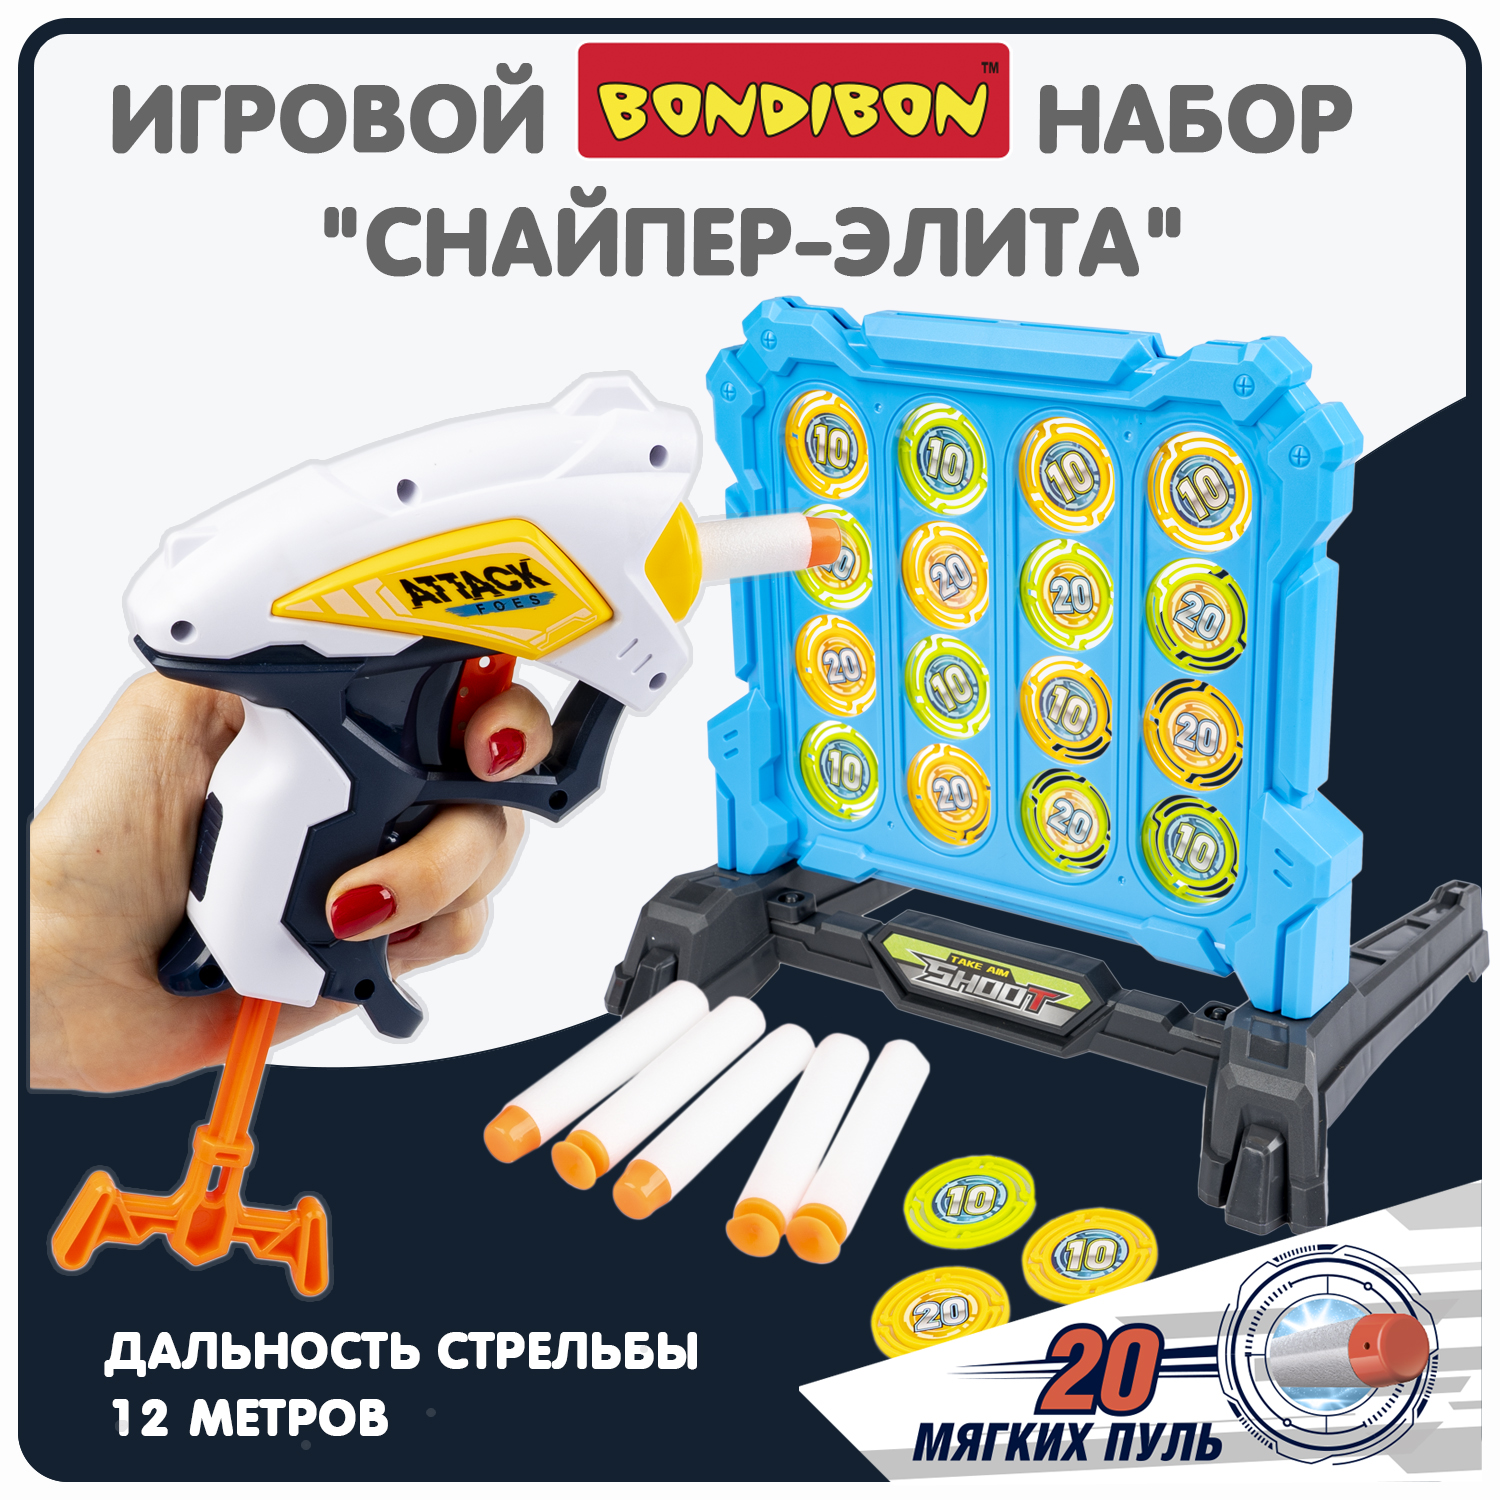 Набор игровой Bondibon CНАЙПЕР-элита пистолет, мишень, мягкие пули / ВВ6064(игрушка) игровой набор wineya лазерный пистолет и мишень на батарейках w7001u